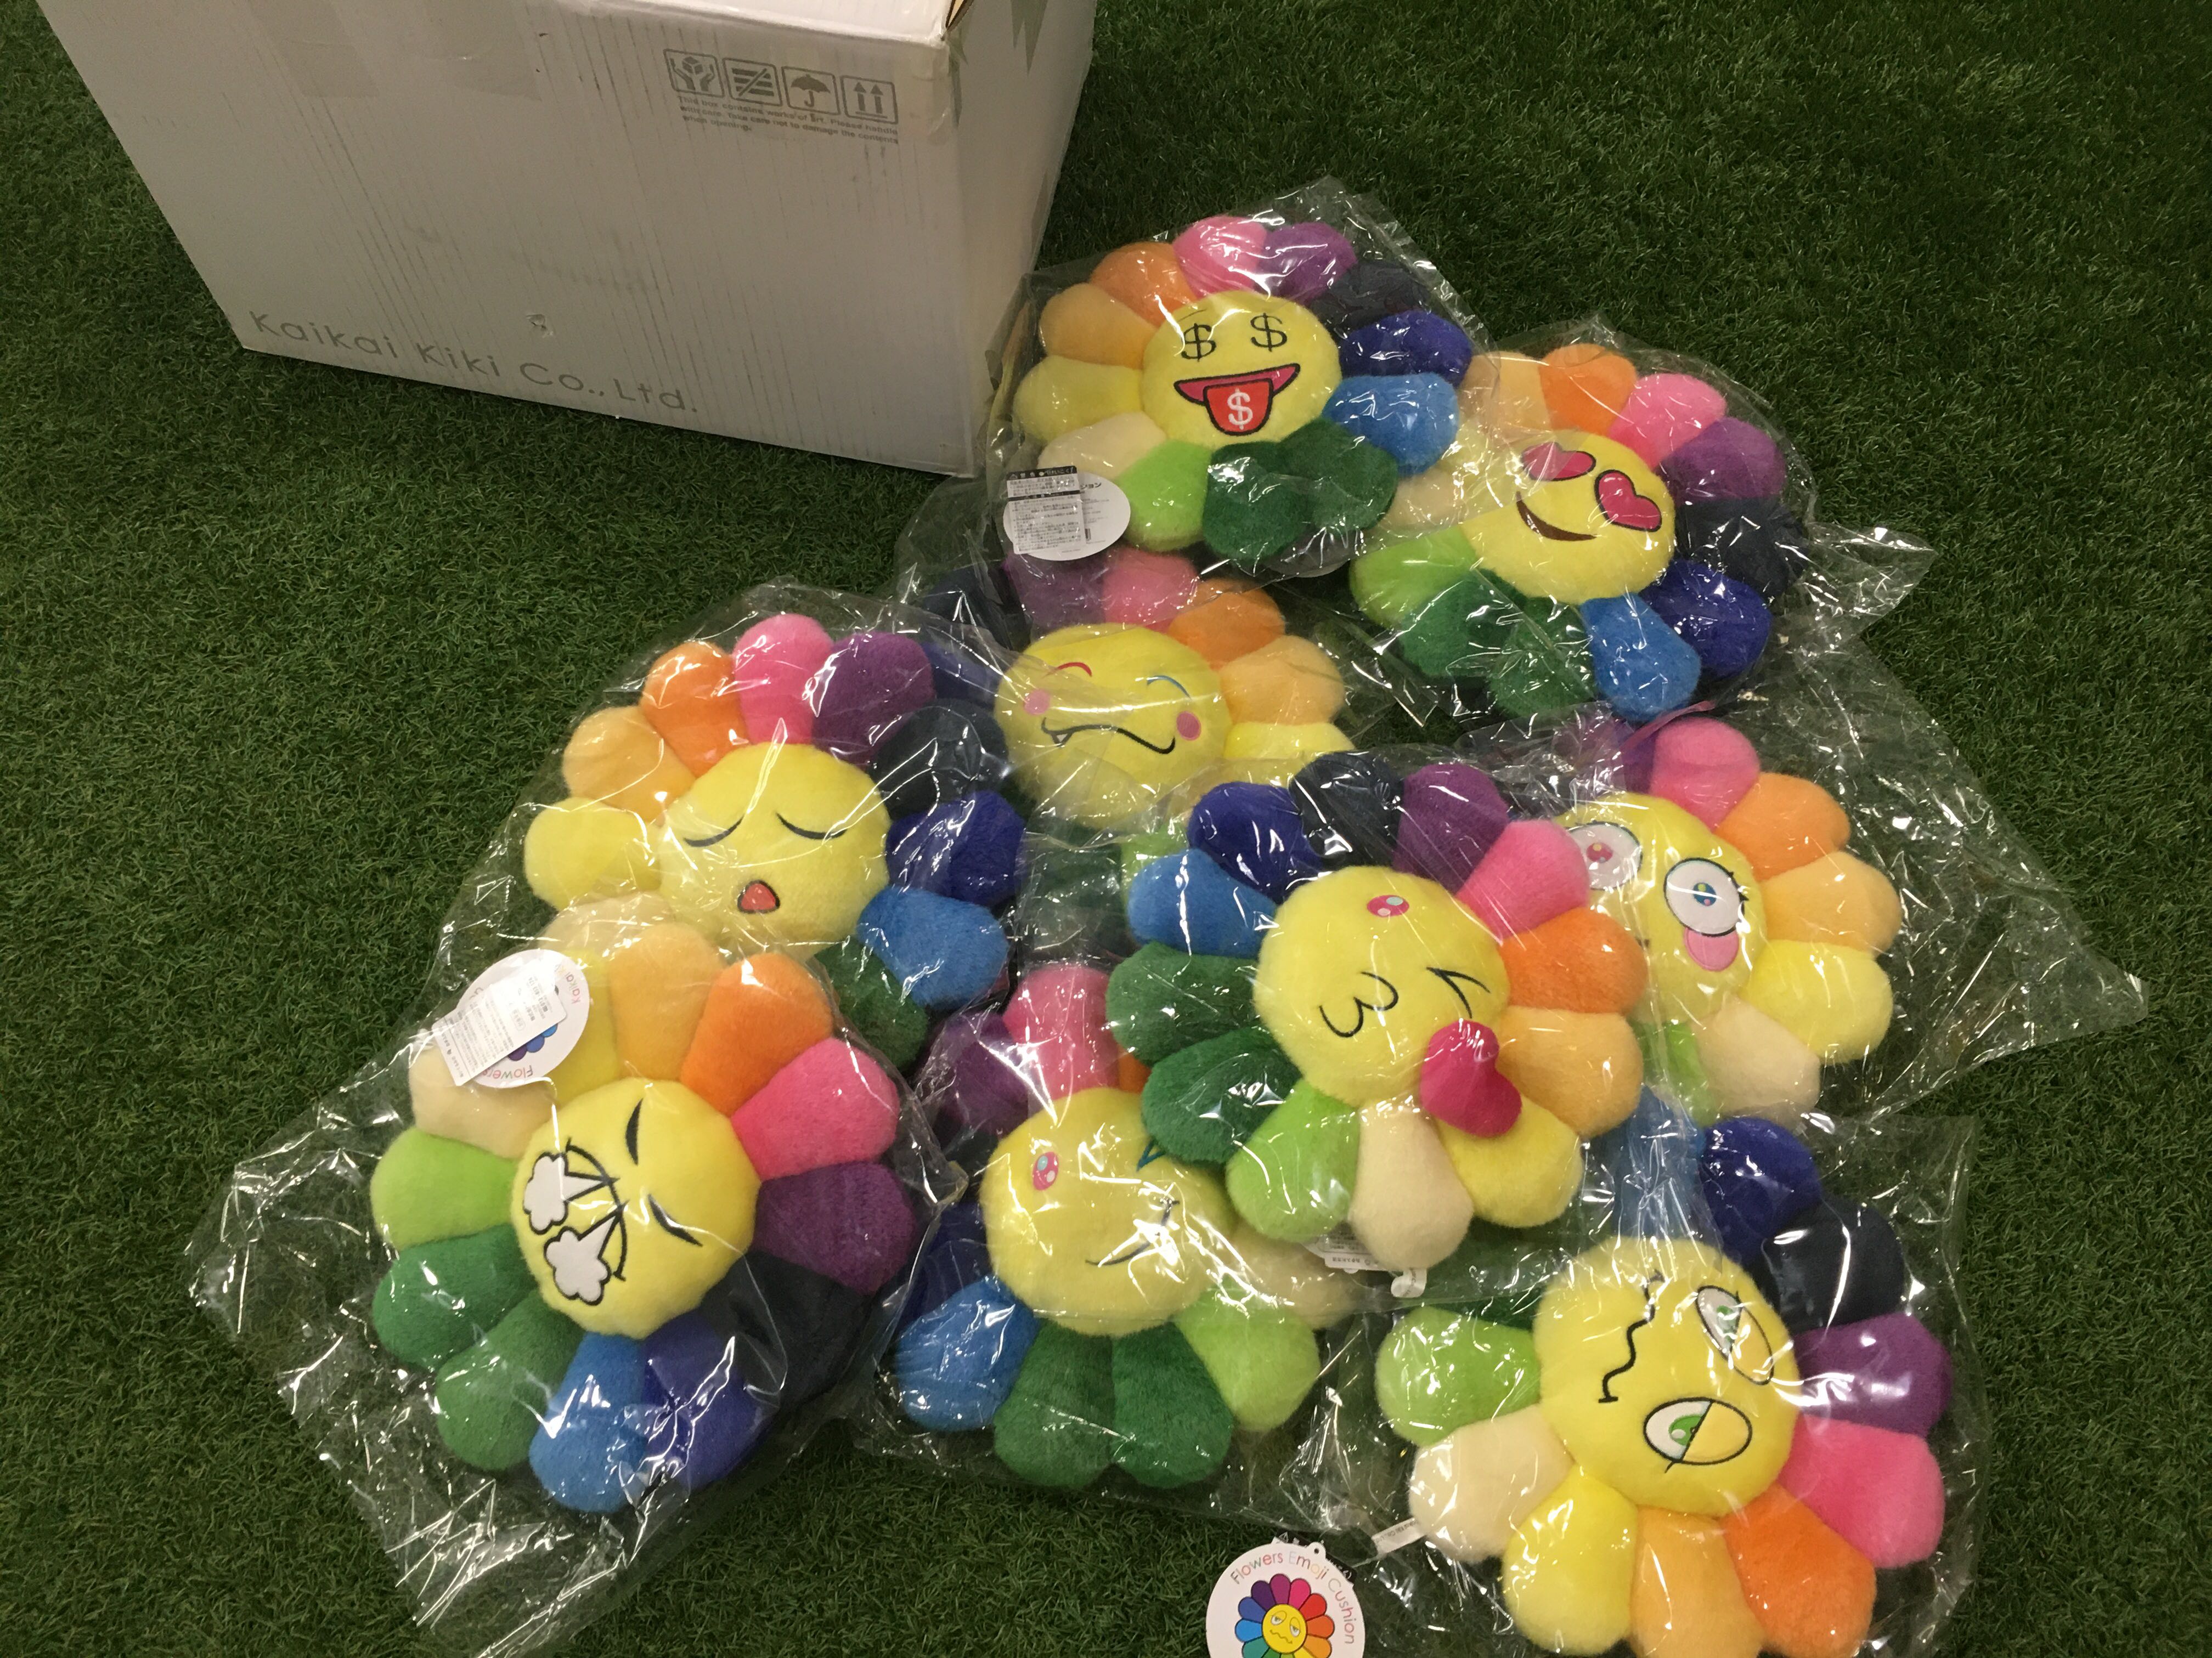 村上隆花花彩虹emoji cushion Takashi Murakami 30cm 現貨, 興趣及遊戲 